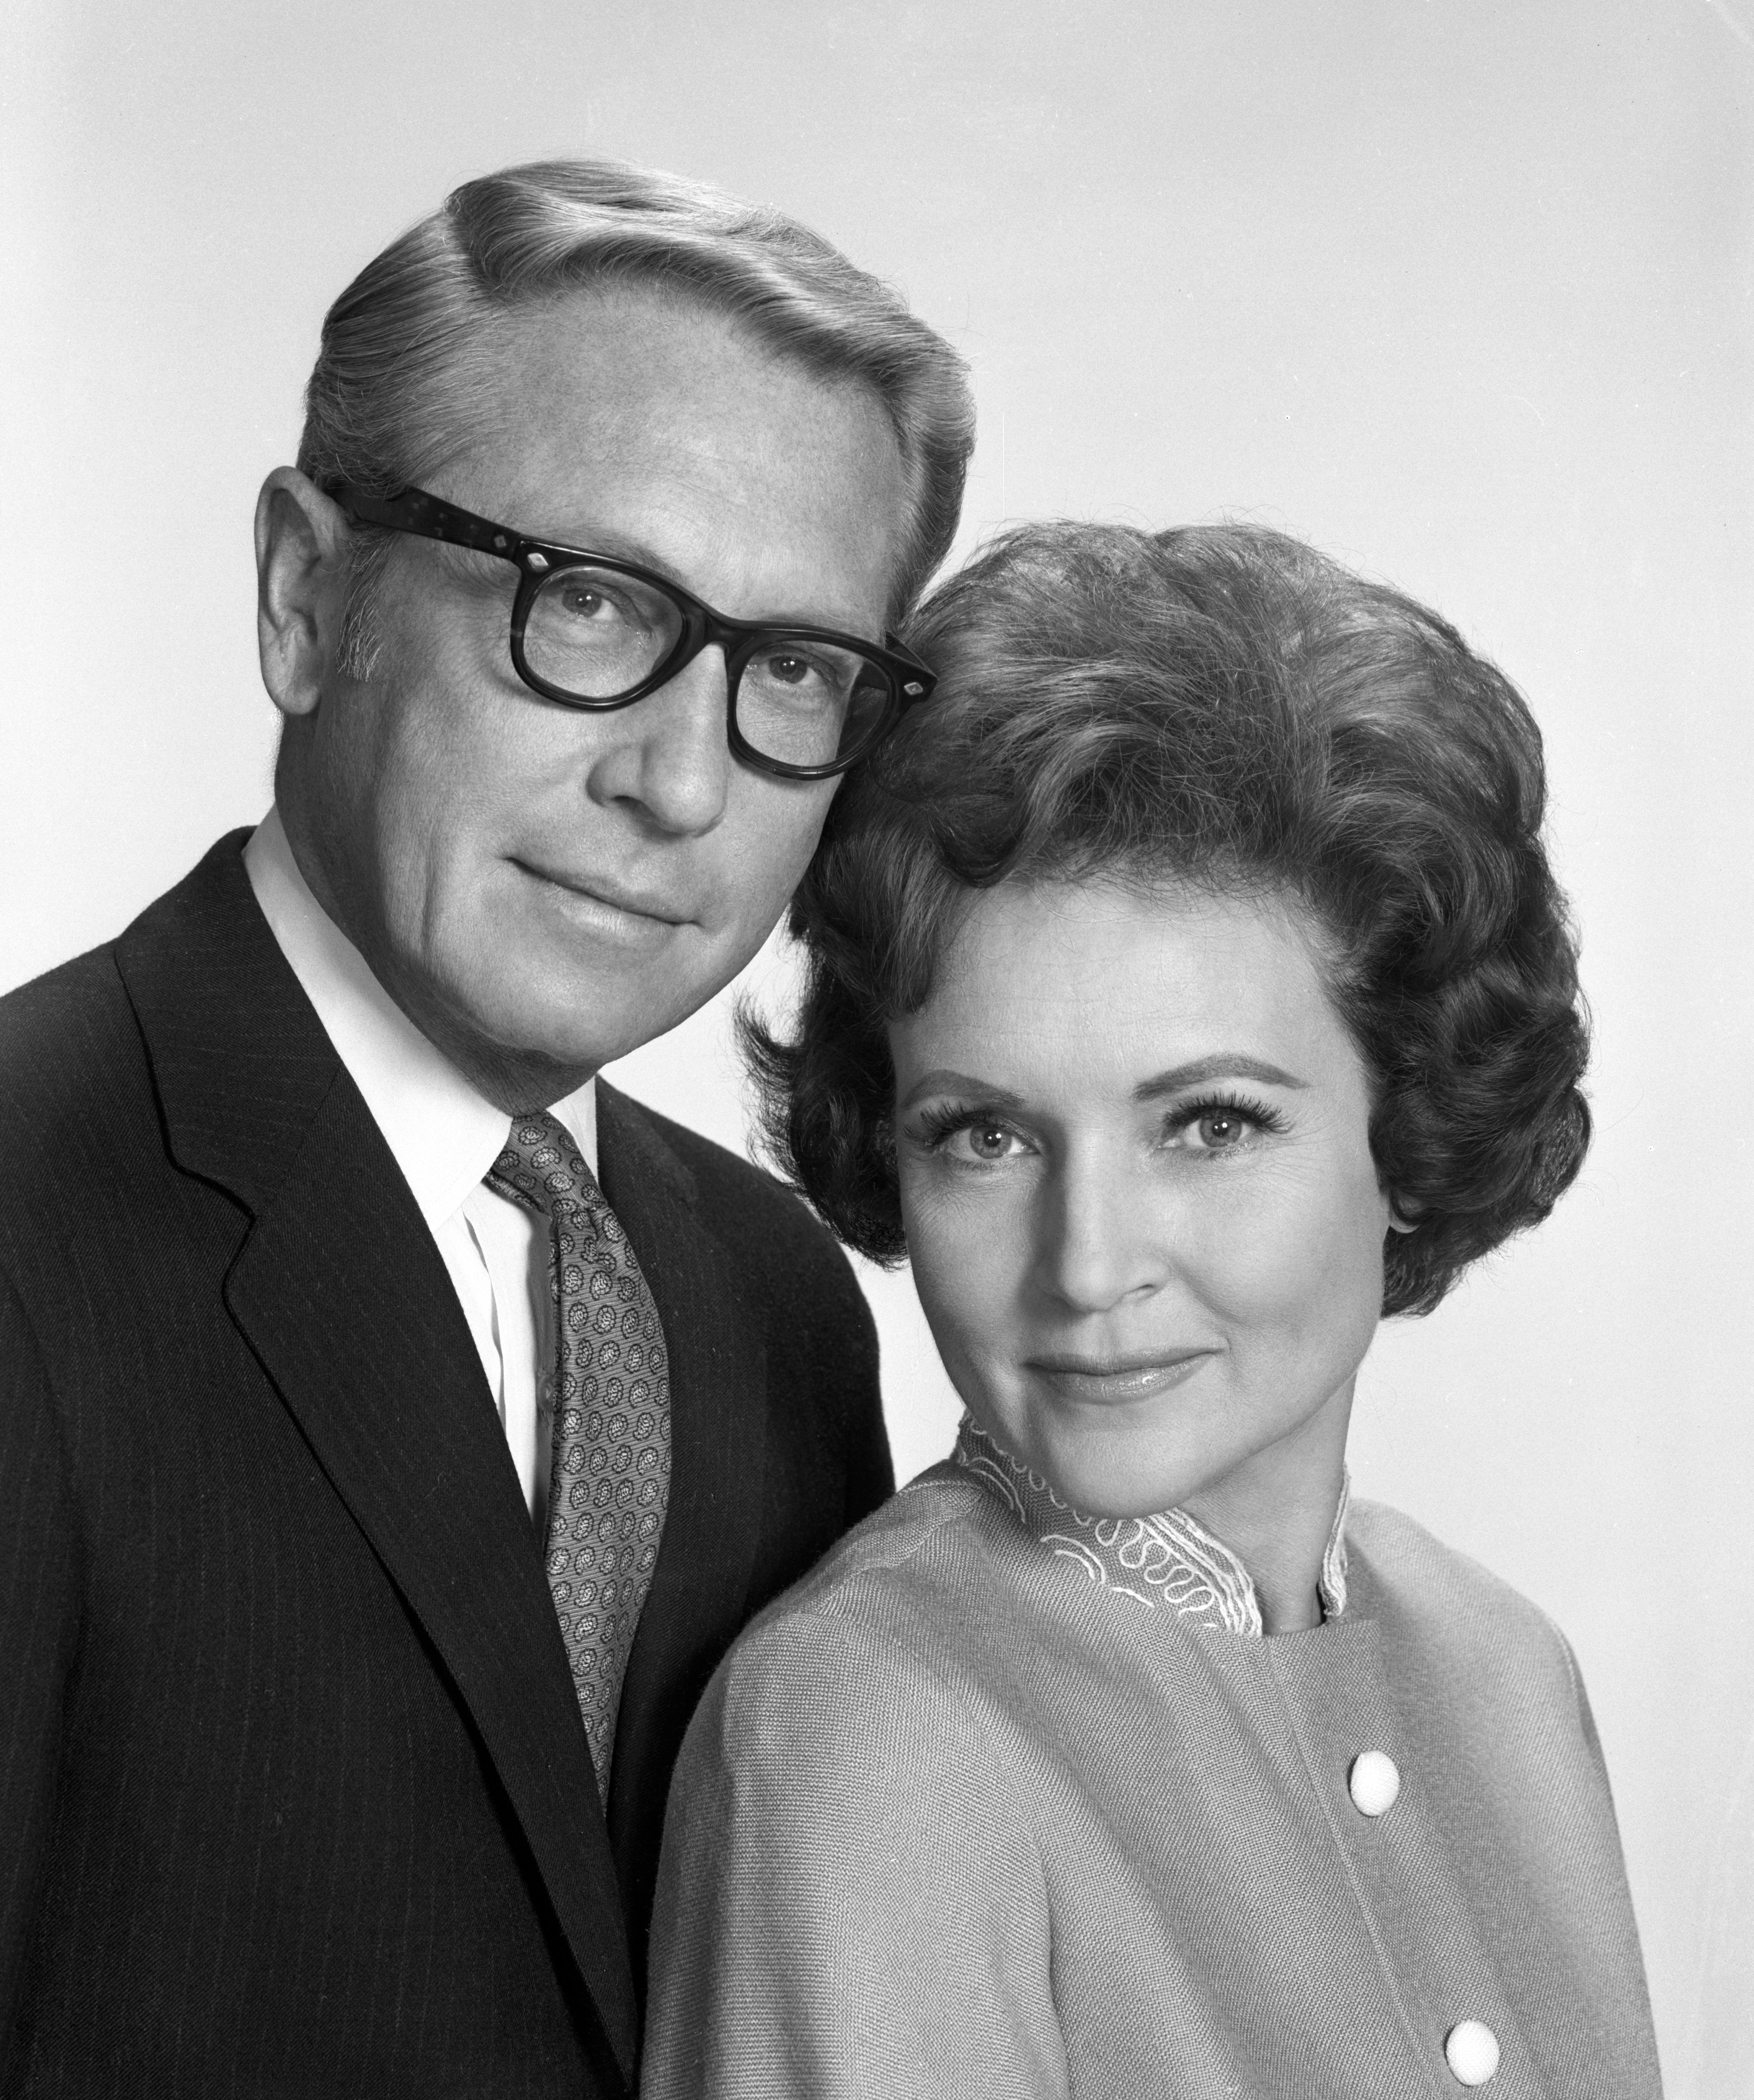 El presentador de TV Allen Ludden y su esposa Betty White retratados el 27 de diciembre de 1968 en Nueva York, Nueva York.┃Foto: Getty Images